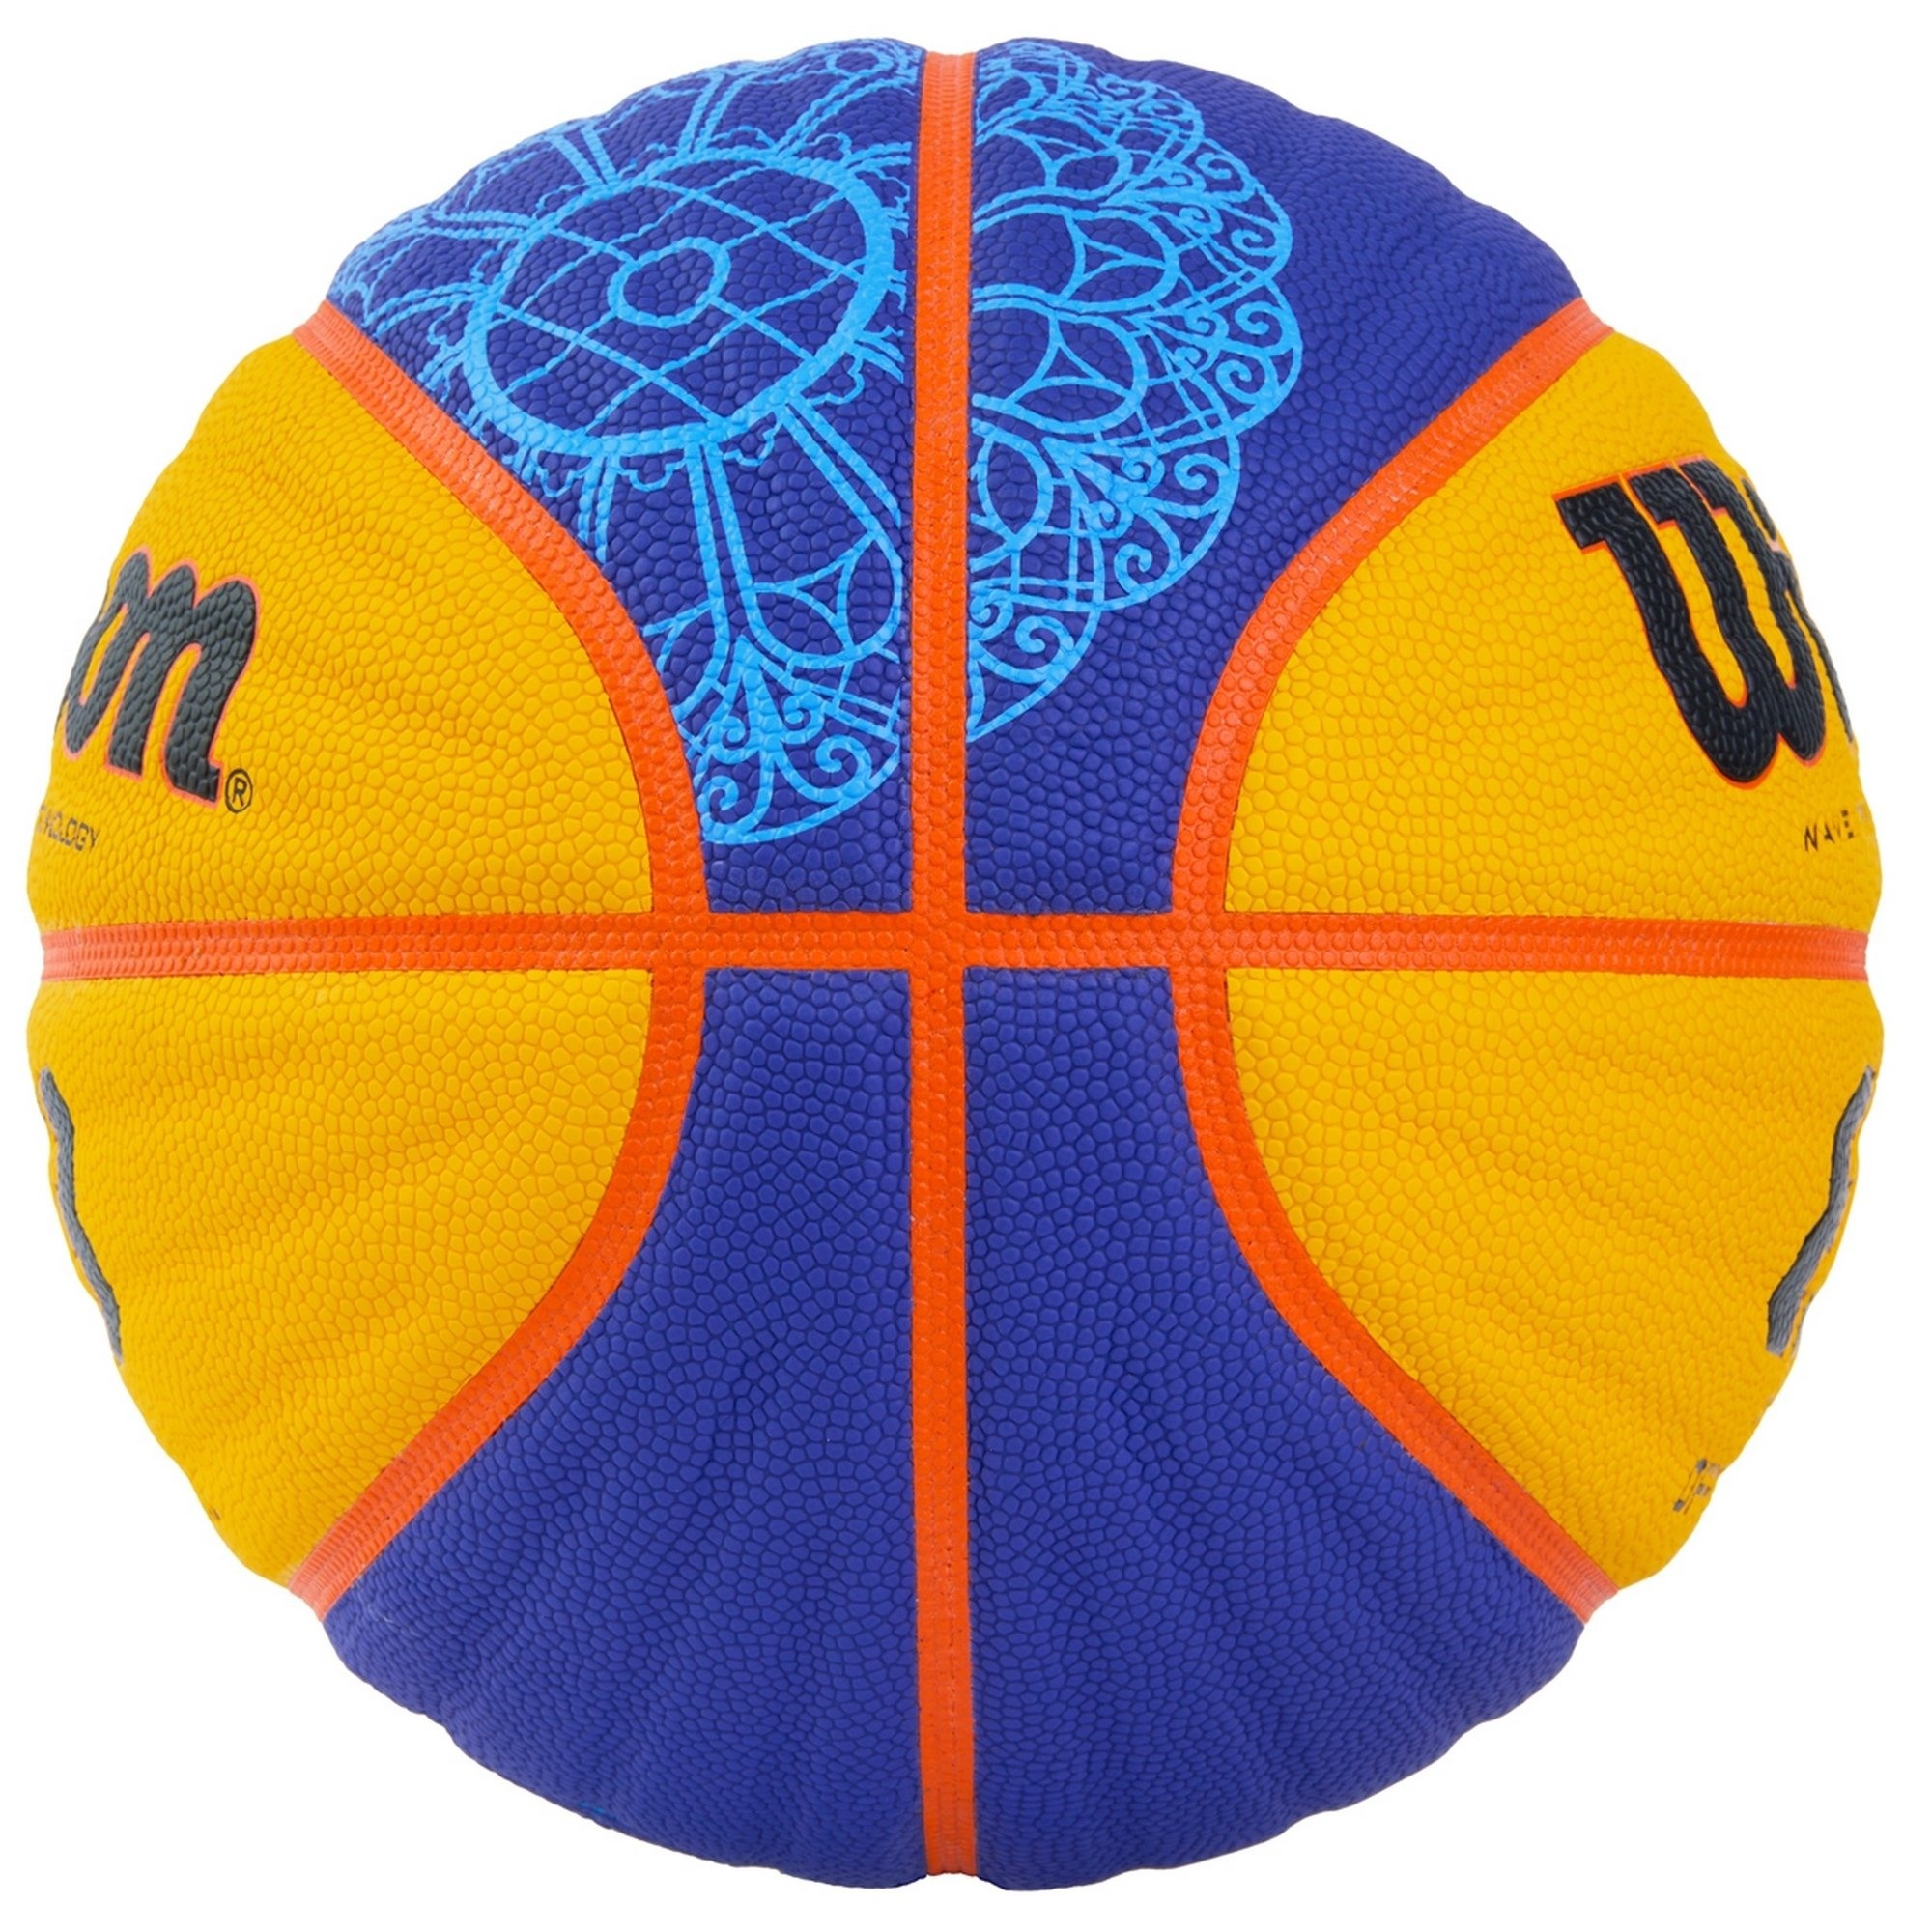 Мяч баскетбольный Wilson FIBA3x3 Official Paris 2024, WZ1011502XB6F р.6 2000_2000